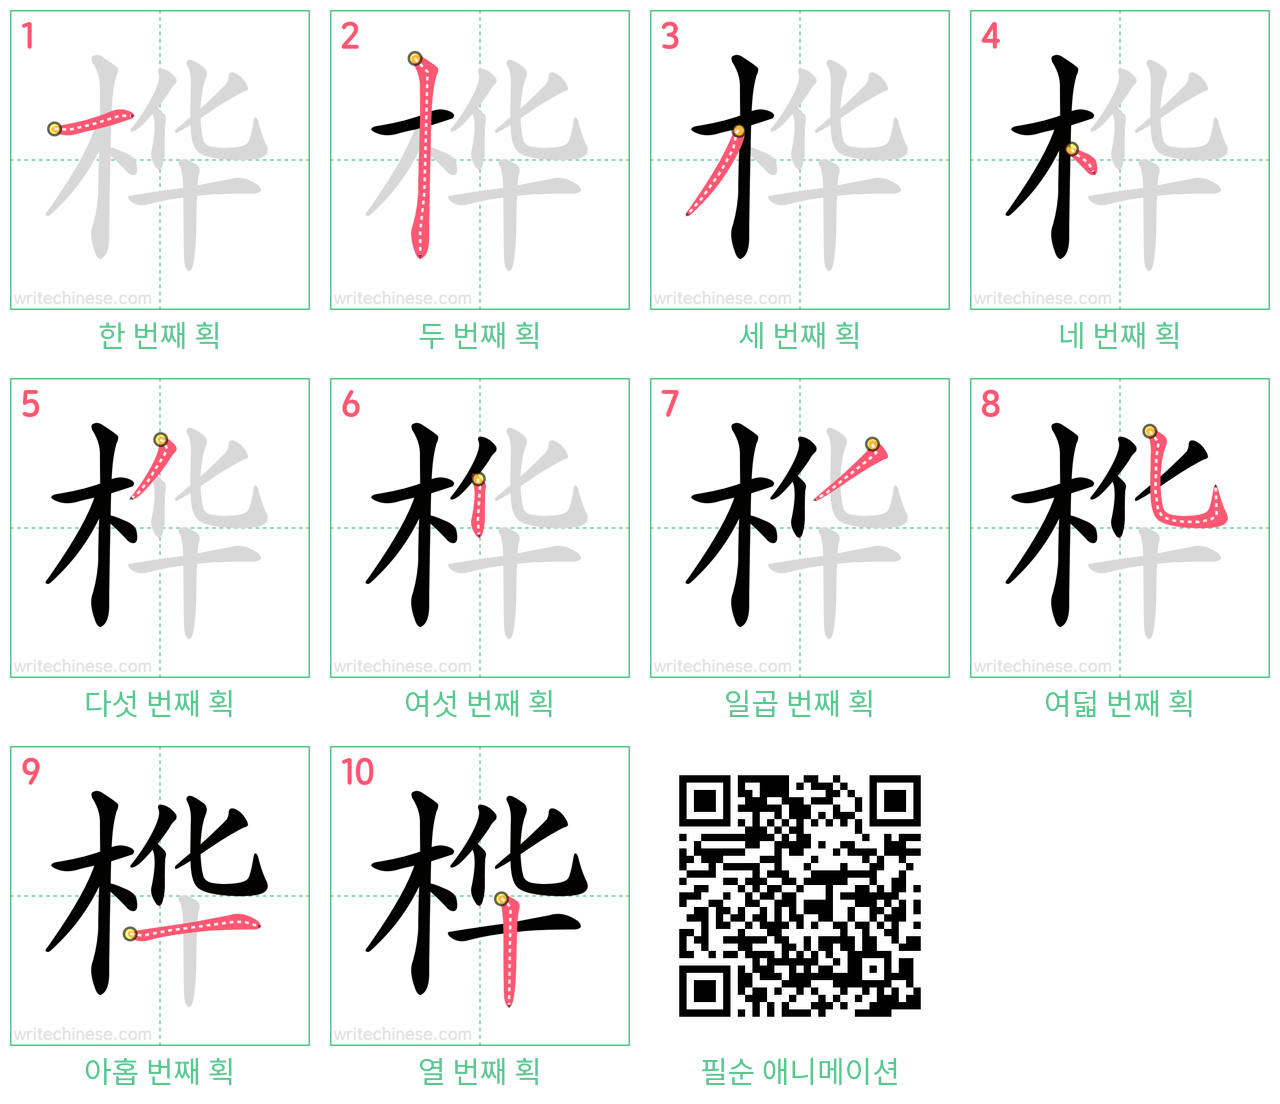 桦 step-by-step stroke order diagrams